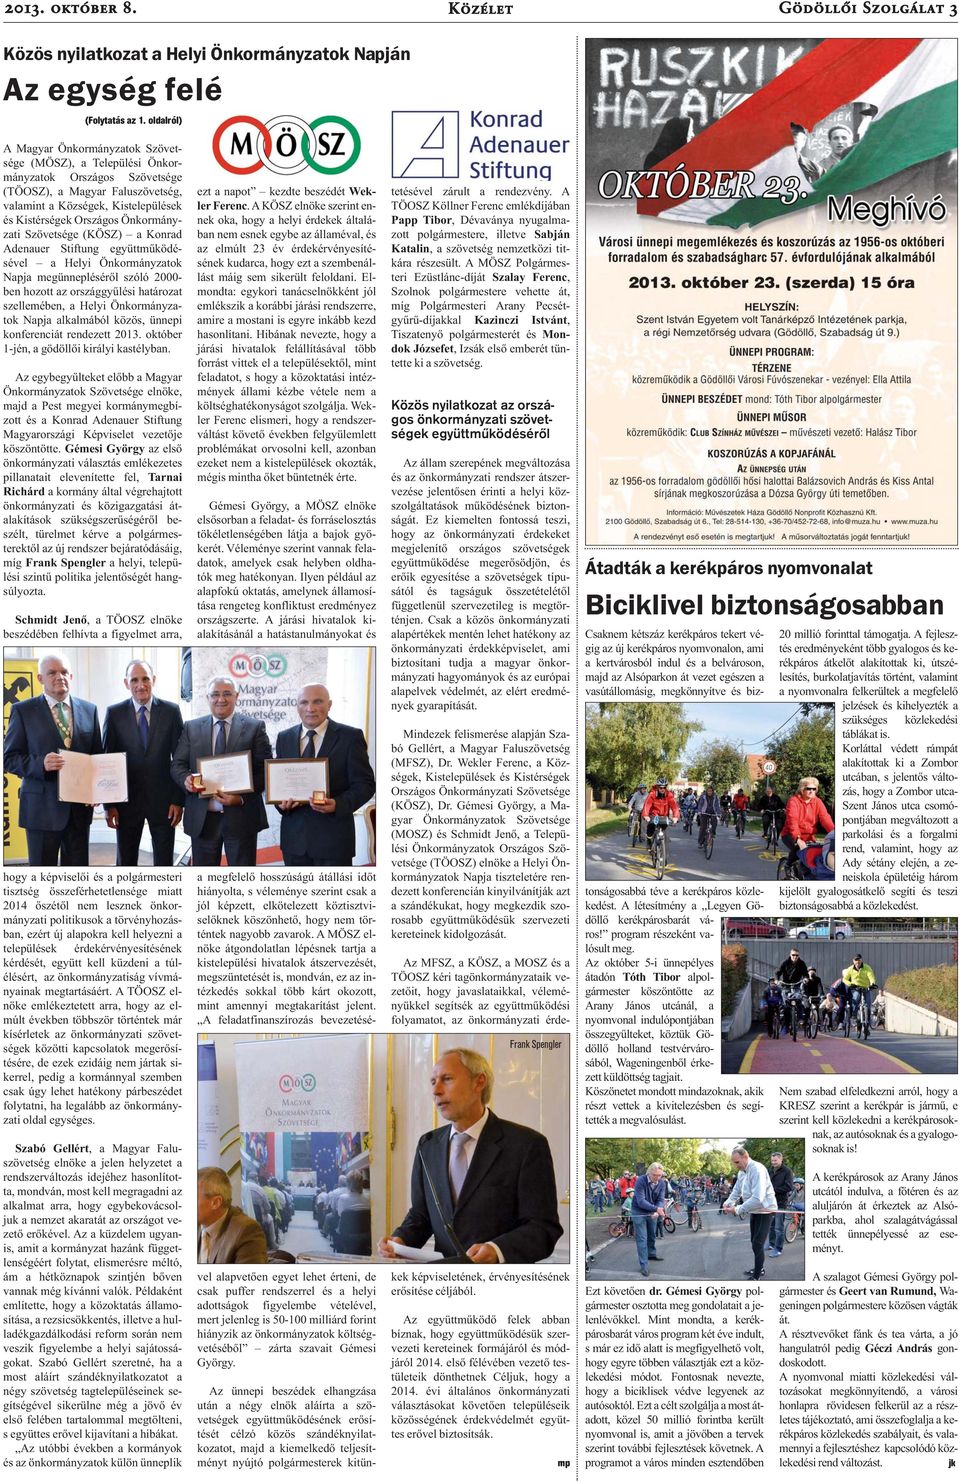 Önkormányzati Szövetsége (KÖSZ) a Konrad Adenauer Stiftung együttműködésével a Helyi Önkormányzatok Napja megünnepléséről szóló 2000- ben hozott az országgyűlési határozat szellemében, a Helyi